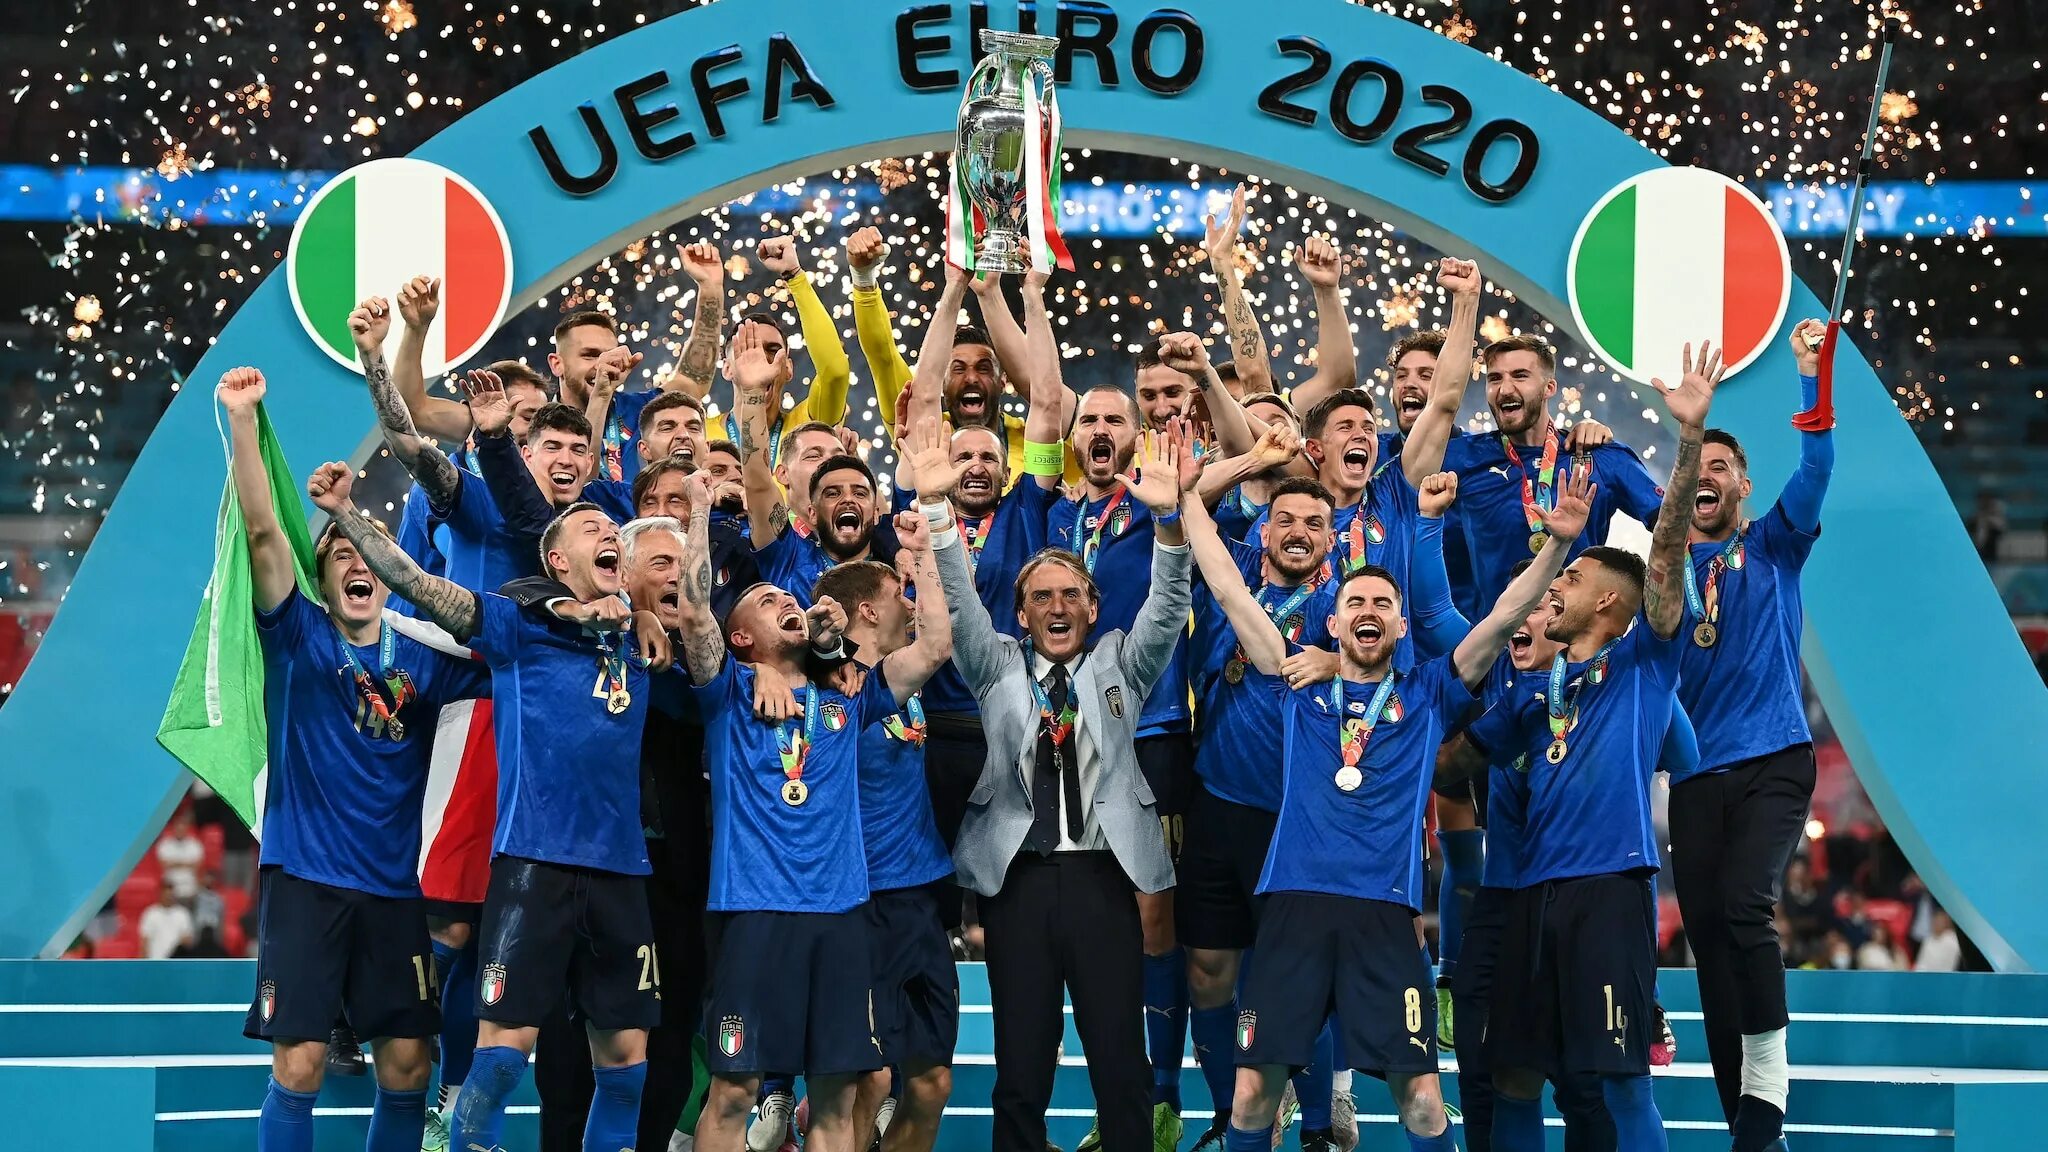 Чемпионы уефа 2020. Сборная Италии по футболу евро 2020. Сборная Италии победитель евро 2020. Сборная Италии по футболу выиграла евро 2020. Сборная Италии чемпион Европы 2020.